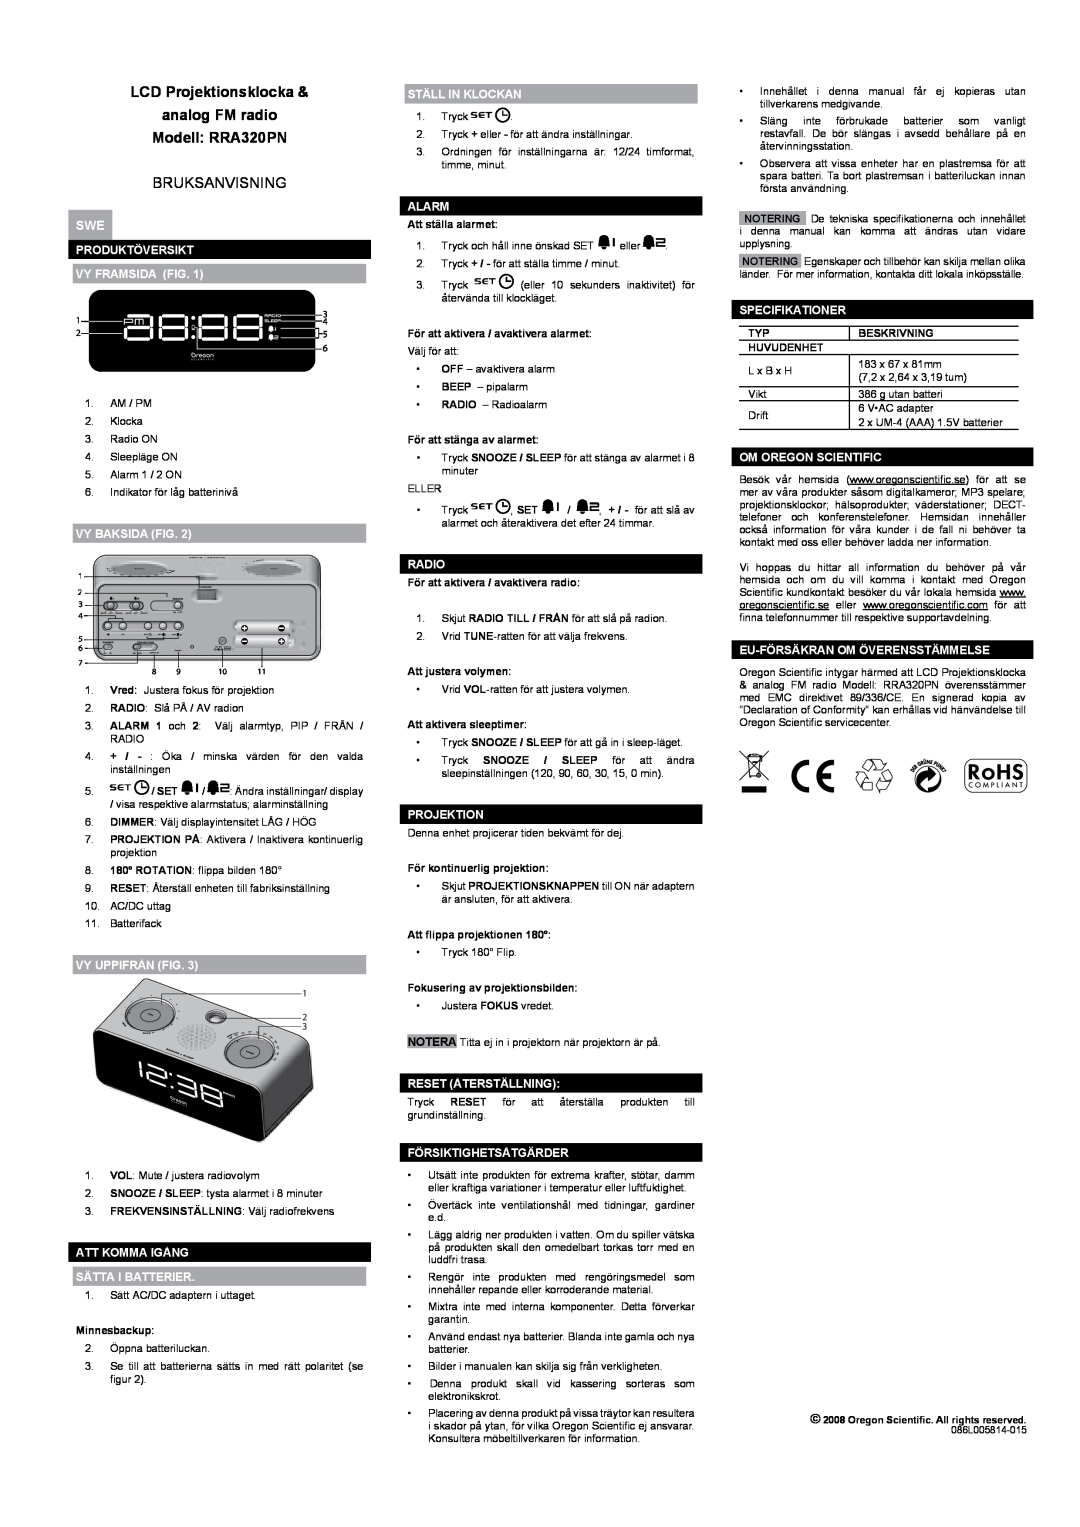 Oregon Scientific user manual LCD Projektionsklocka analog FM radio Modell RRA320PN, Bruksanvisning 